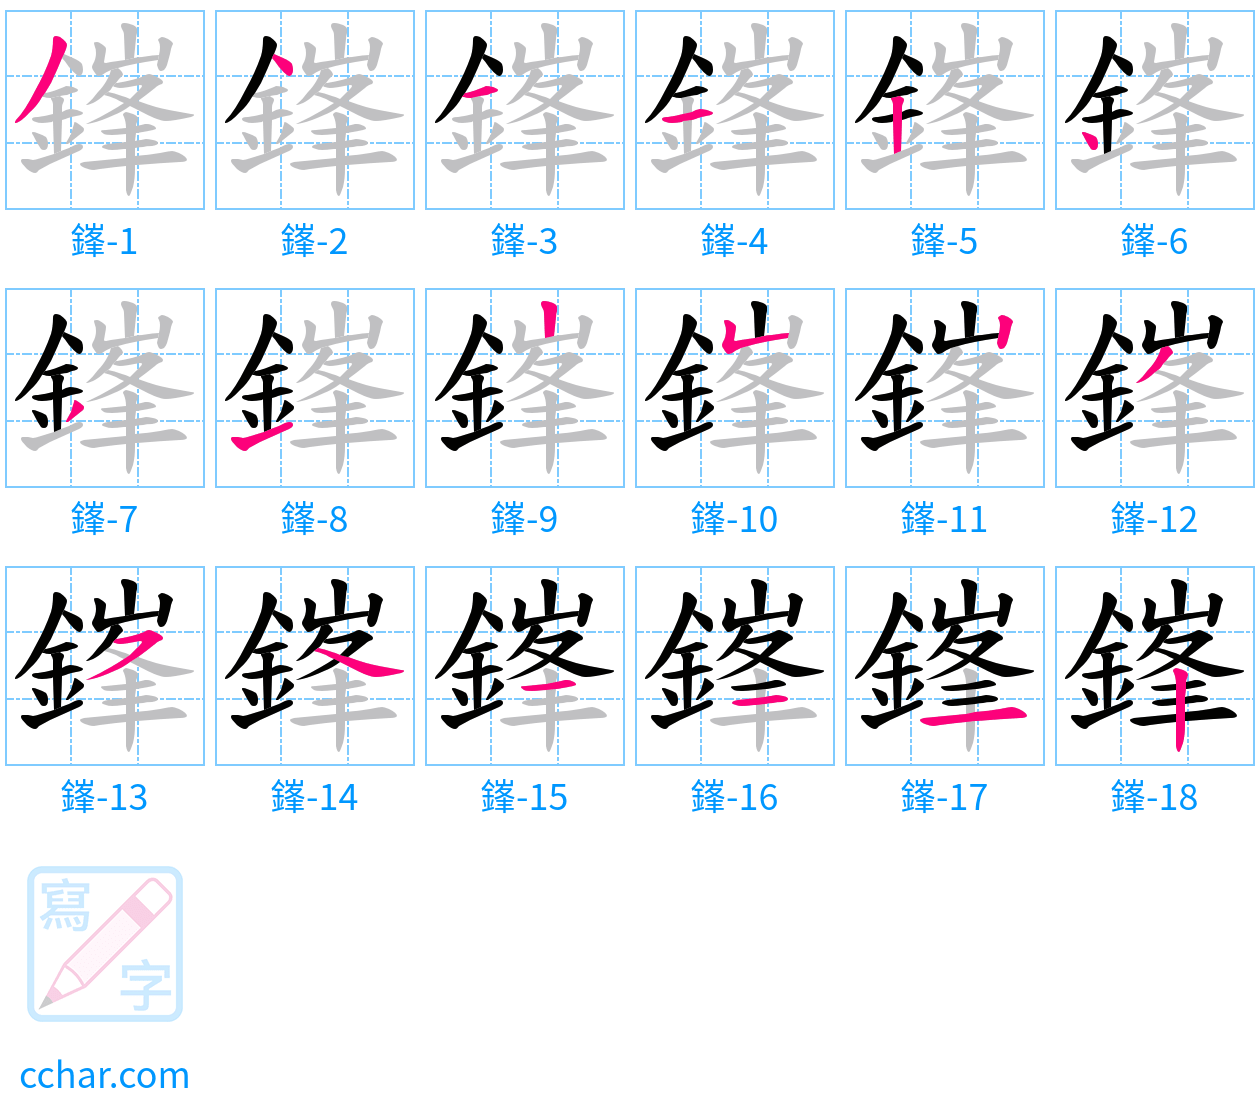 鎽 stroke order step-by-step diagram